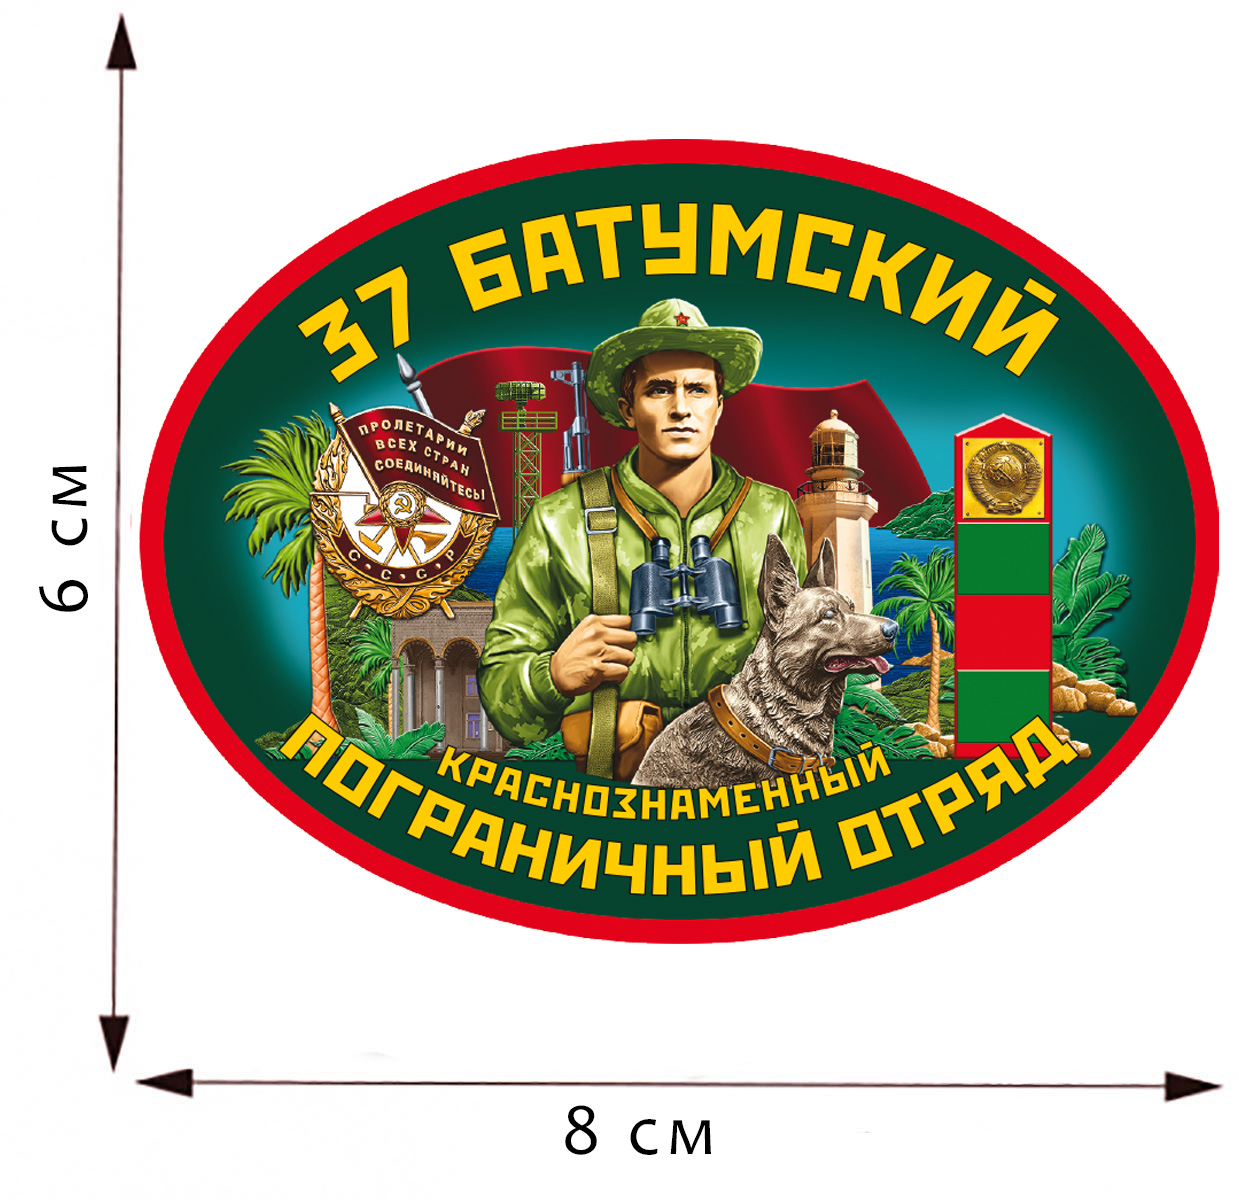 Термоаппликация "37 Батумский пограничный отряд" 